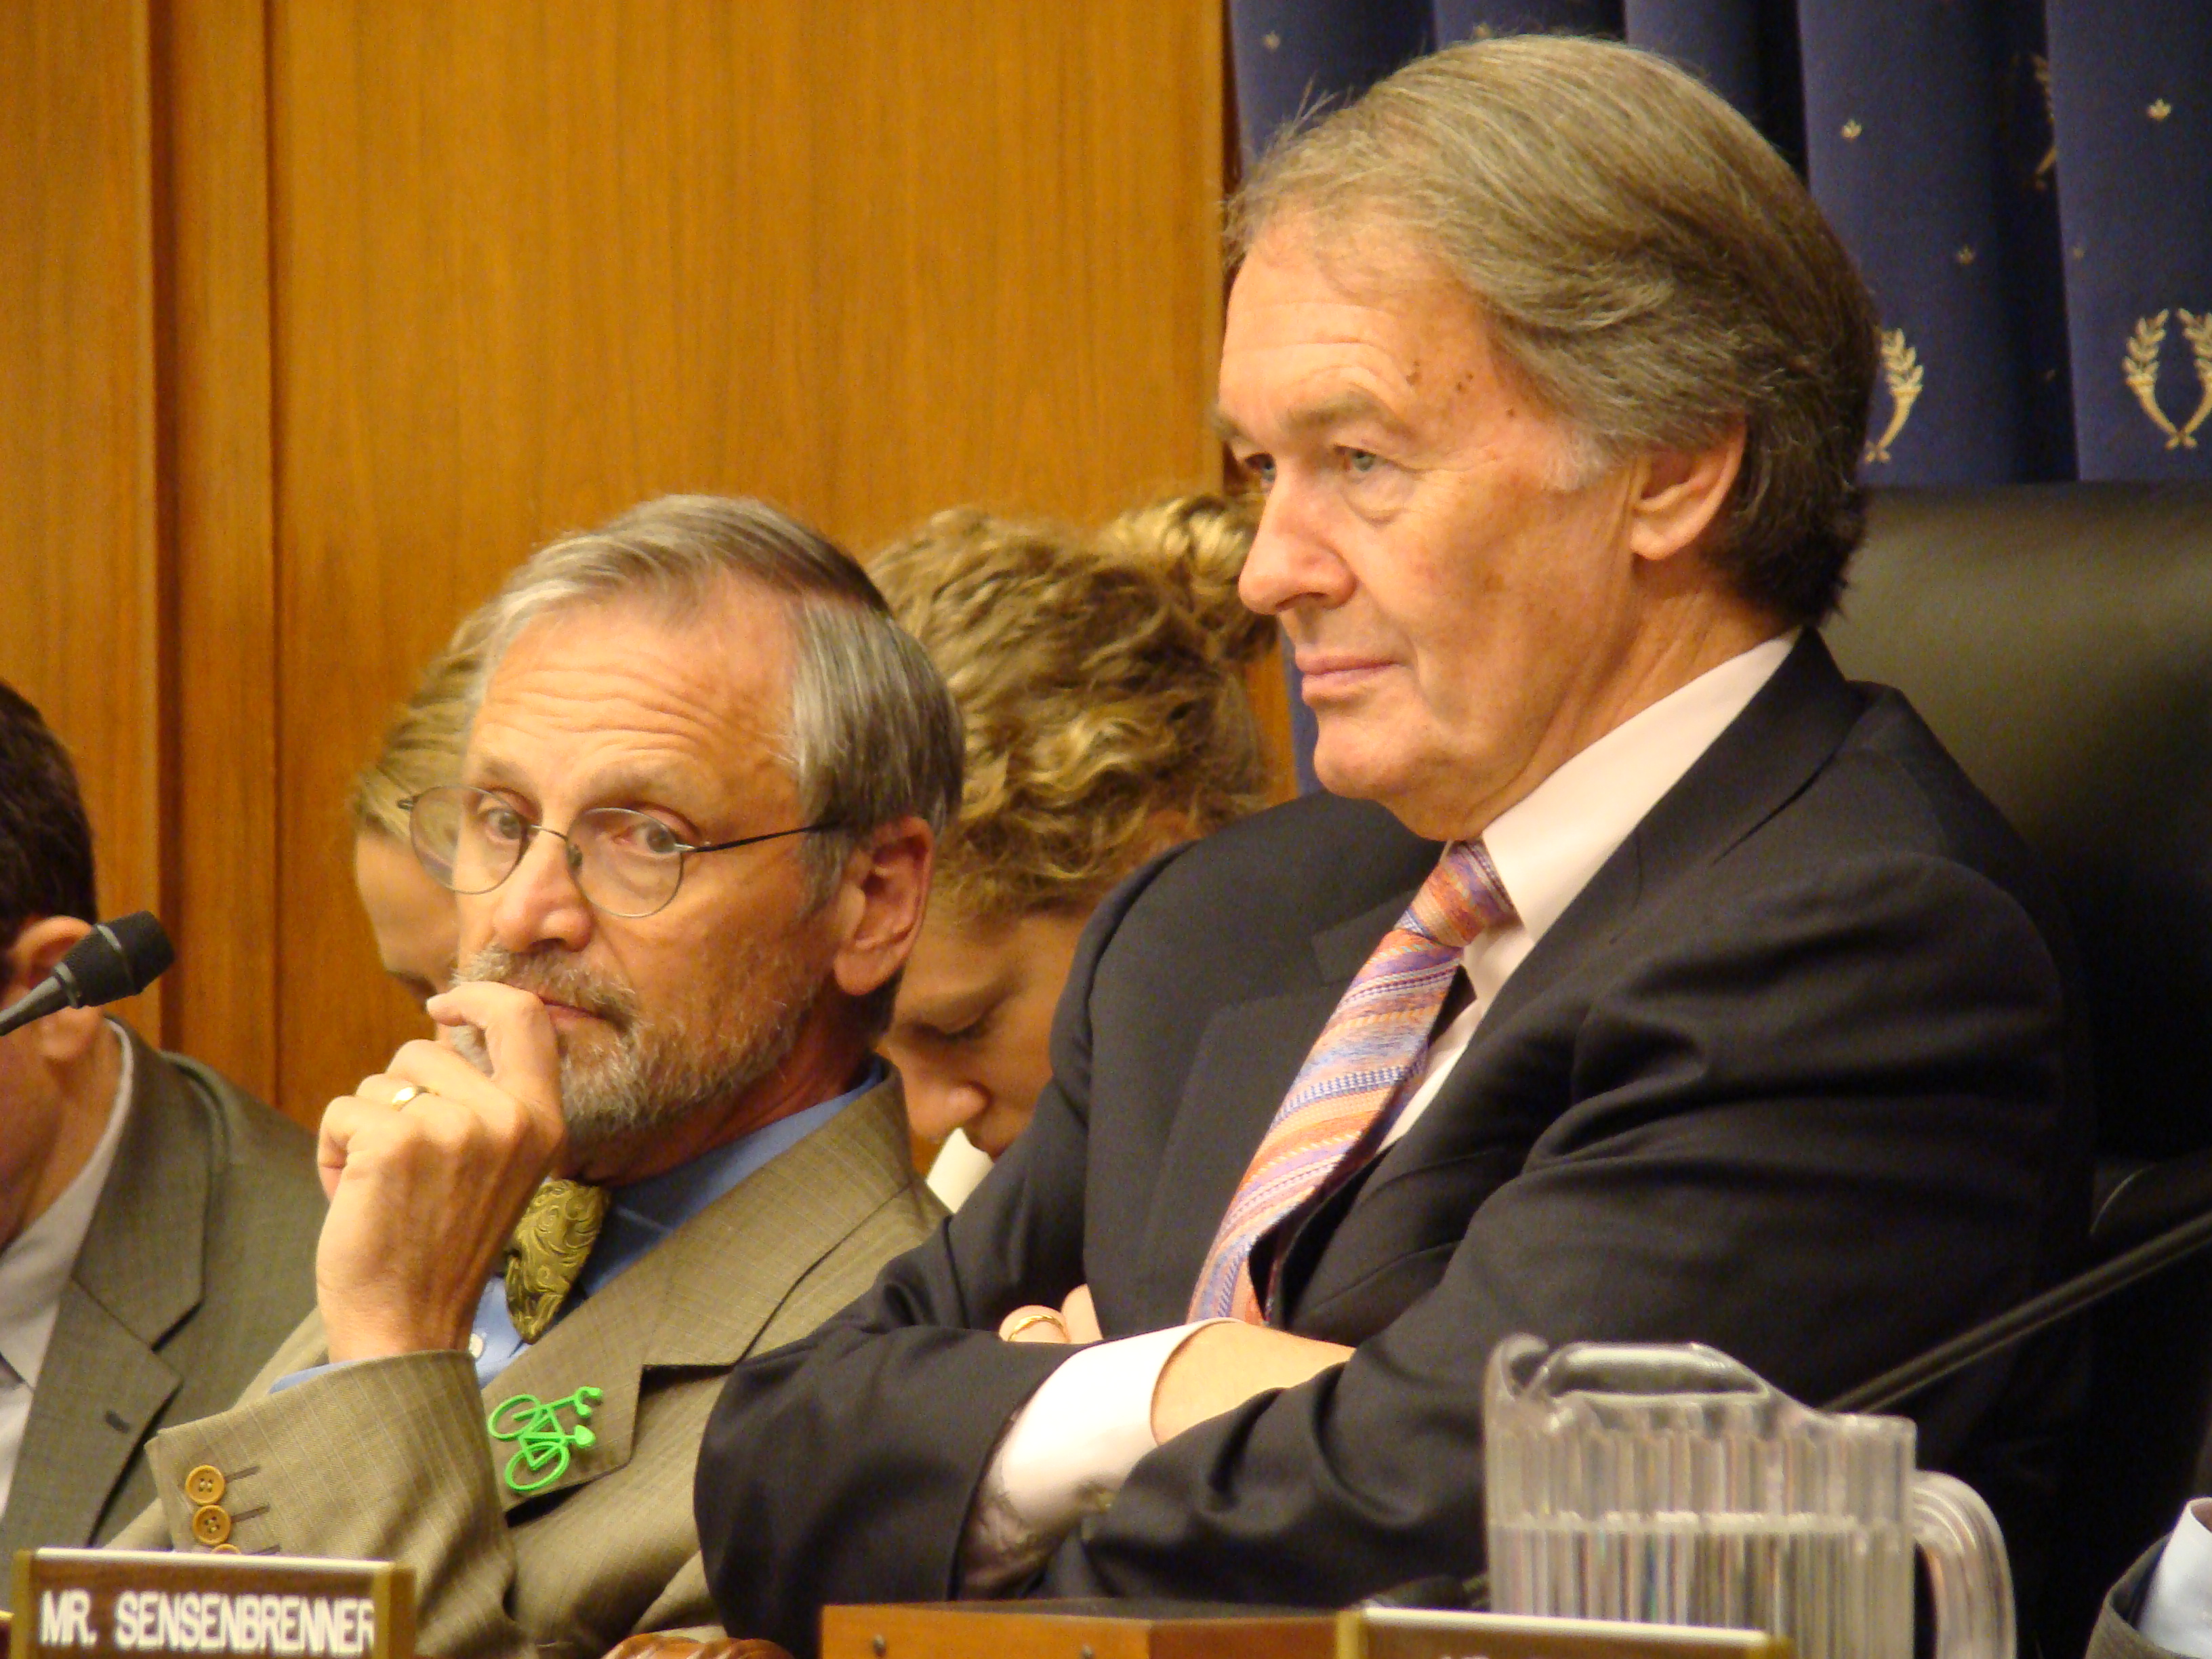 Chairman Markey and Congressman Blumenauer